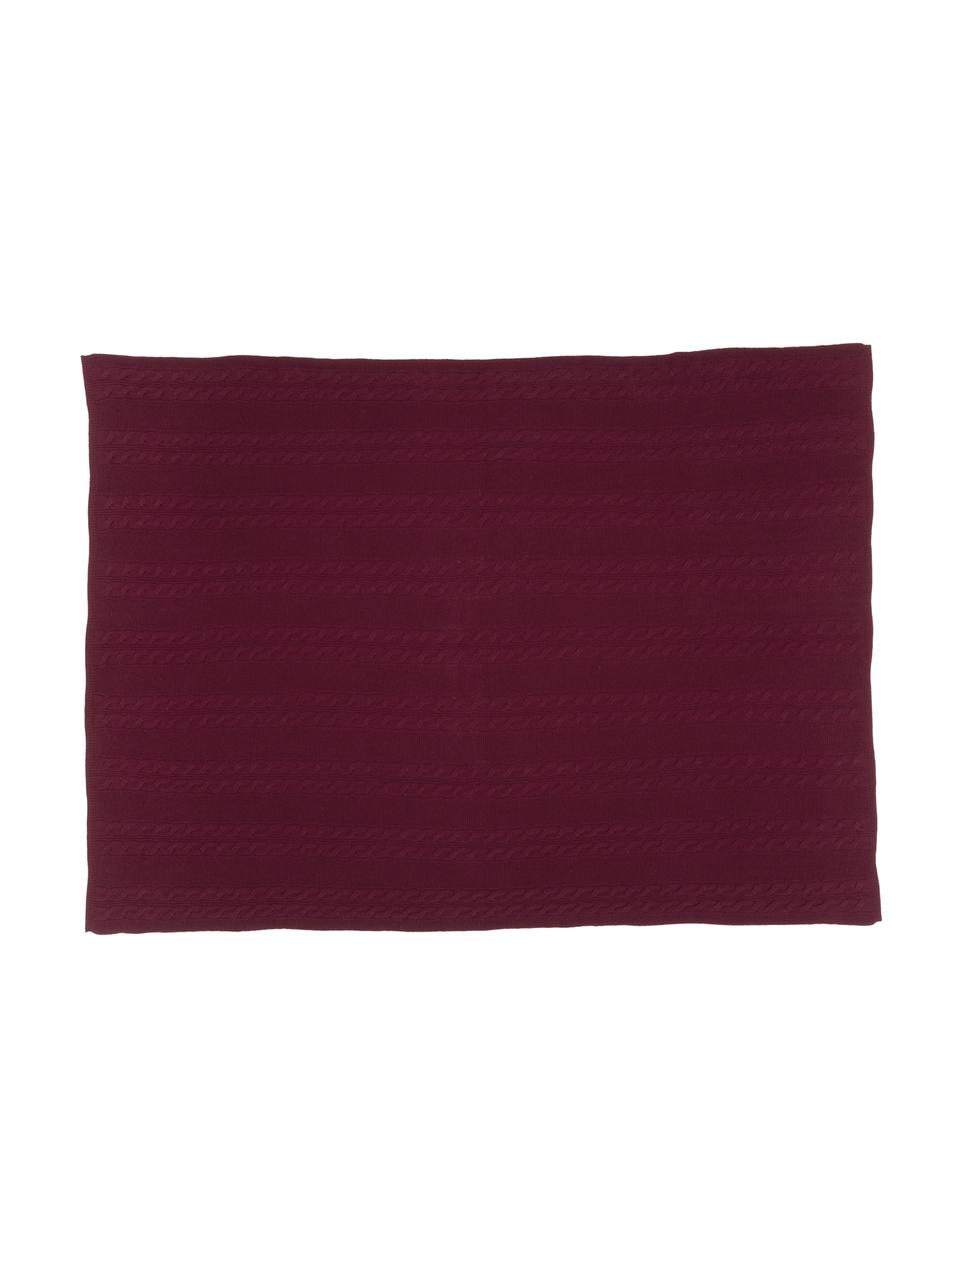 Manta de cachemira pura Leonie, 100% cachemira
La cachemira es un tejido muy suave, cómodo y cálido, Rojo oscuro, An 130 x L 170 cm